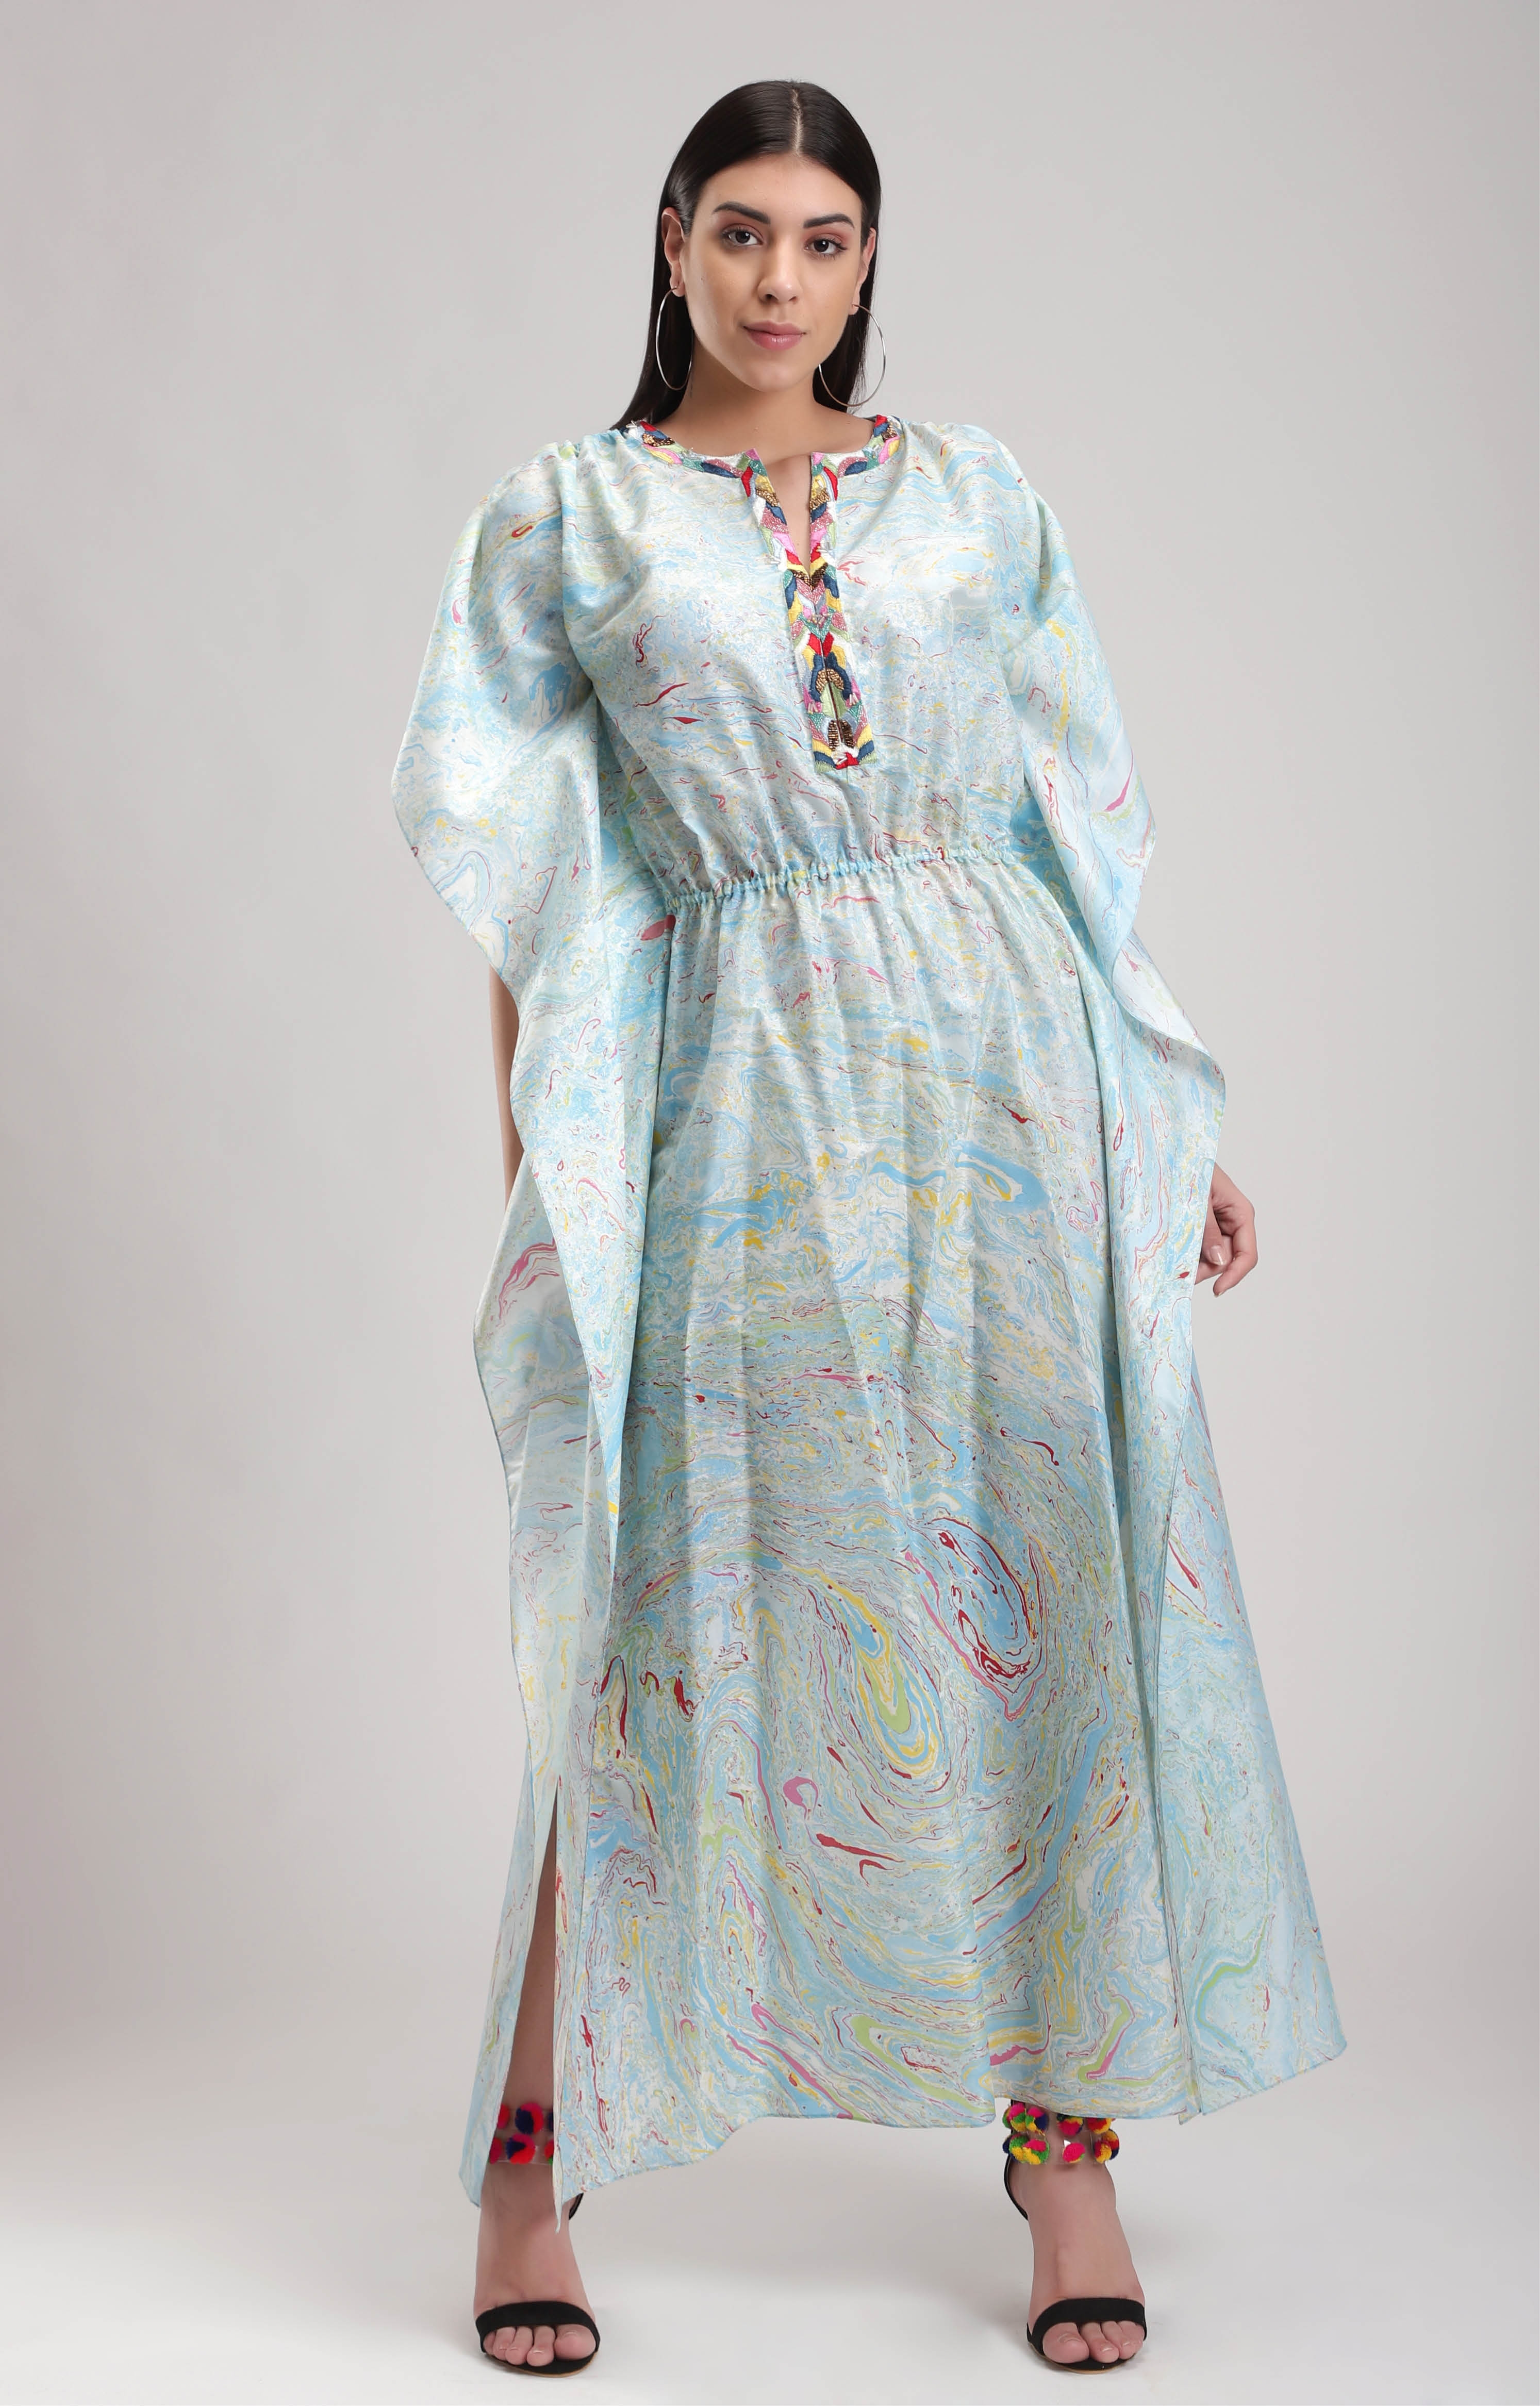 Blue marbled kaftan dress